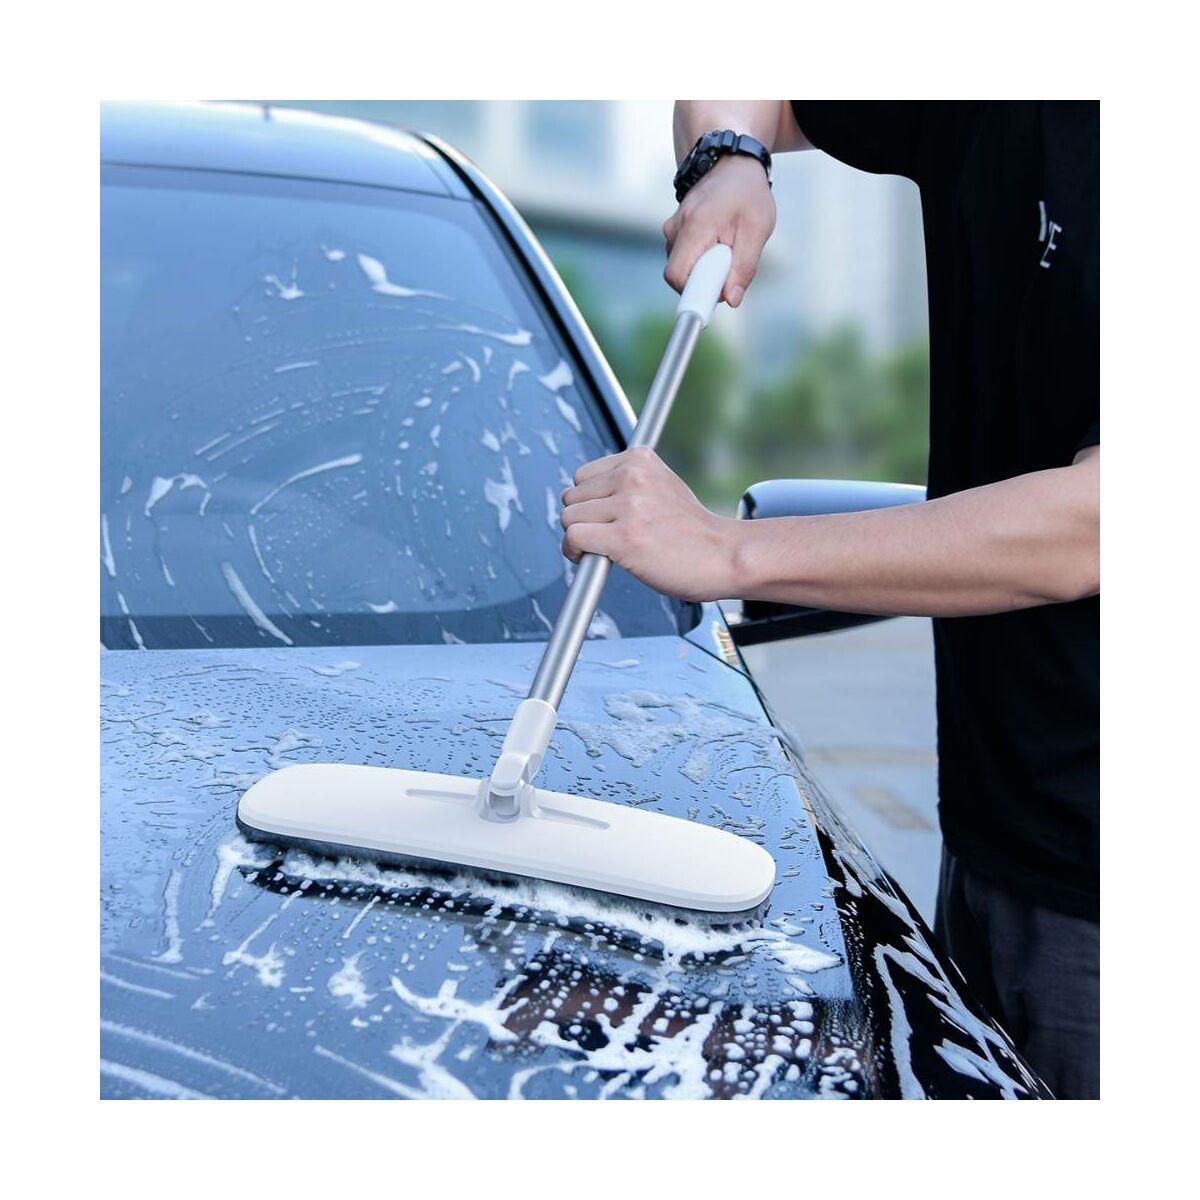 Kép 15/16 - Baseus autós kiegészítő, Handy Car Home mosó/tisztító nyélhez cserélhető ruha fej (2db / csomag) 100% poliészter chenille, szürke (CRTB-A0G)